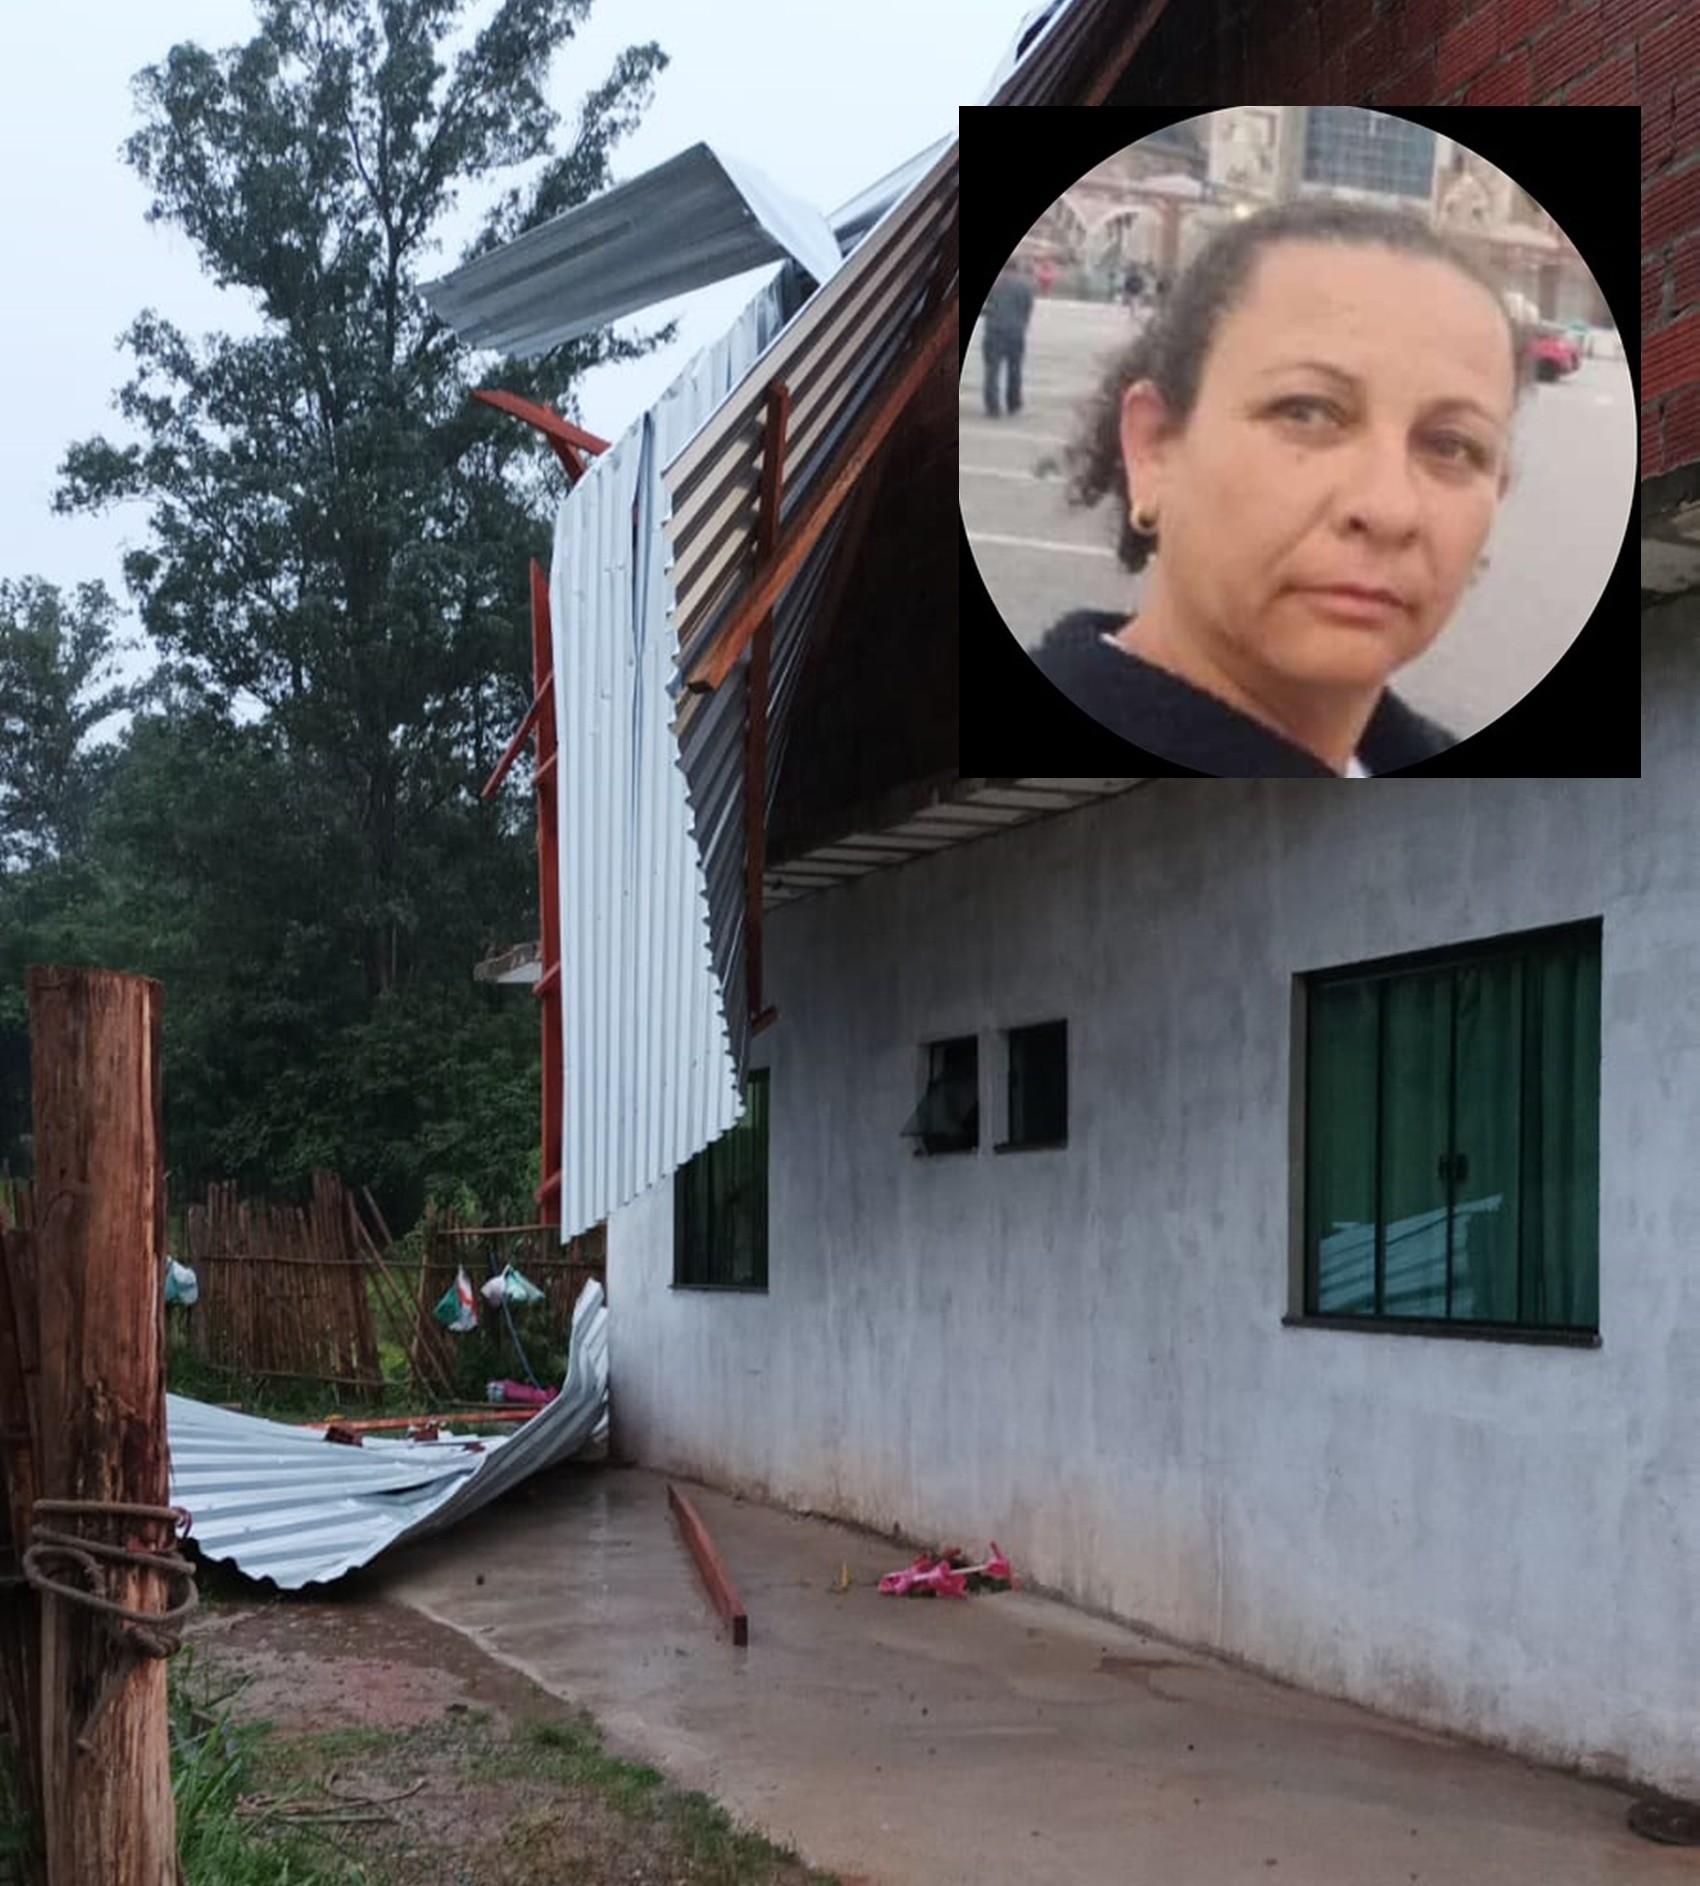 Estrutura metálica de telhado cai em cima de família durante vendaval e mata mulher em MG